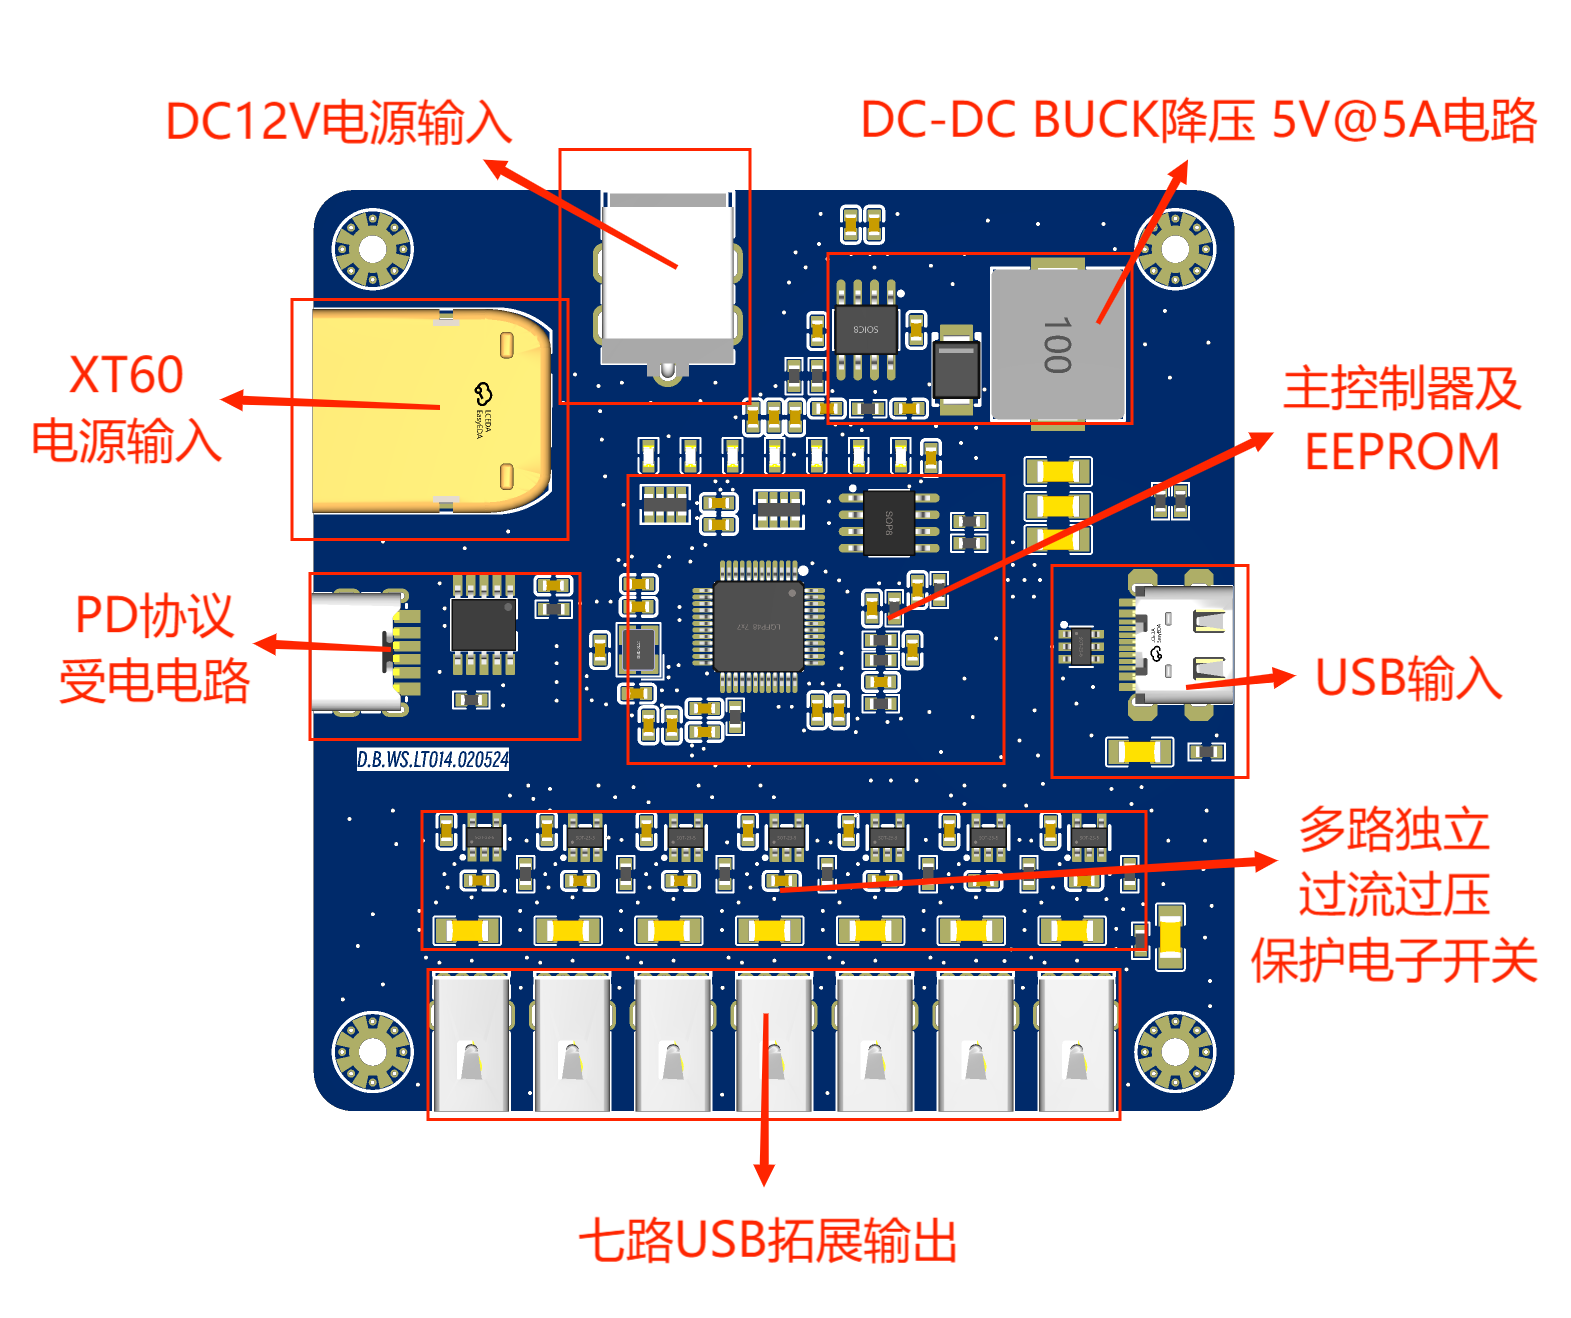 7端口独立供电功率保护USB2.0扩展坞硬件项目图1